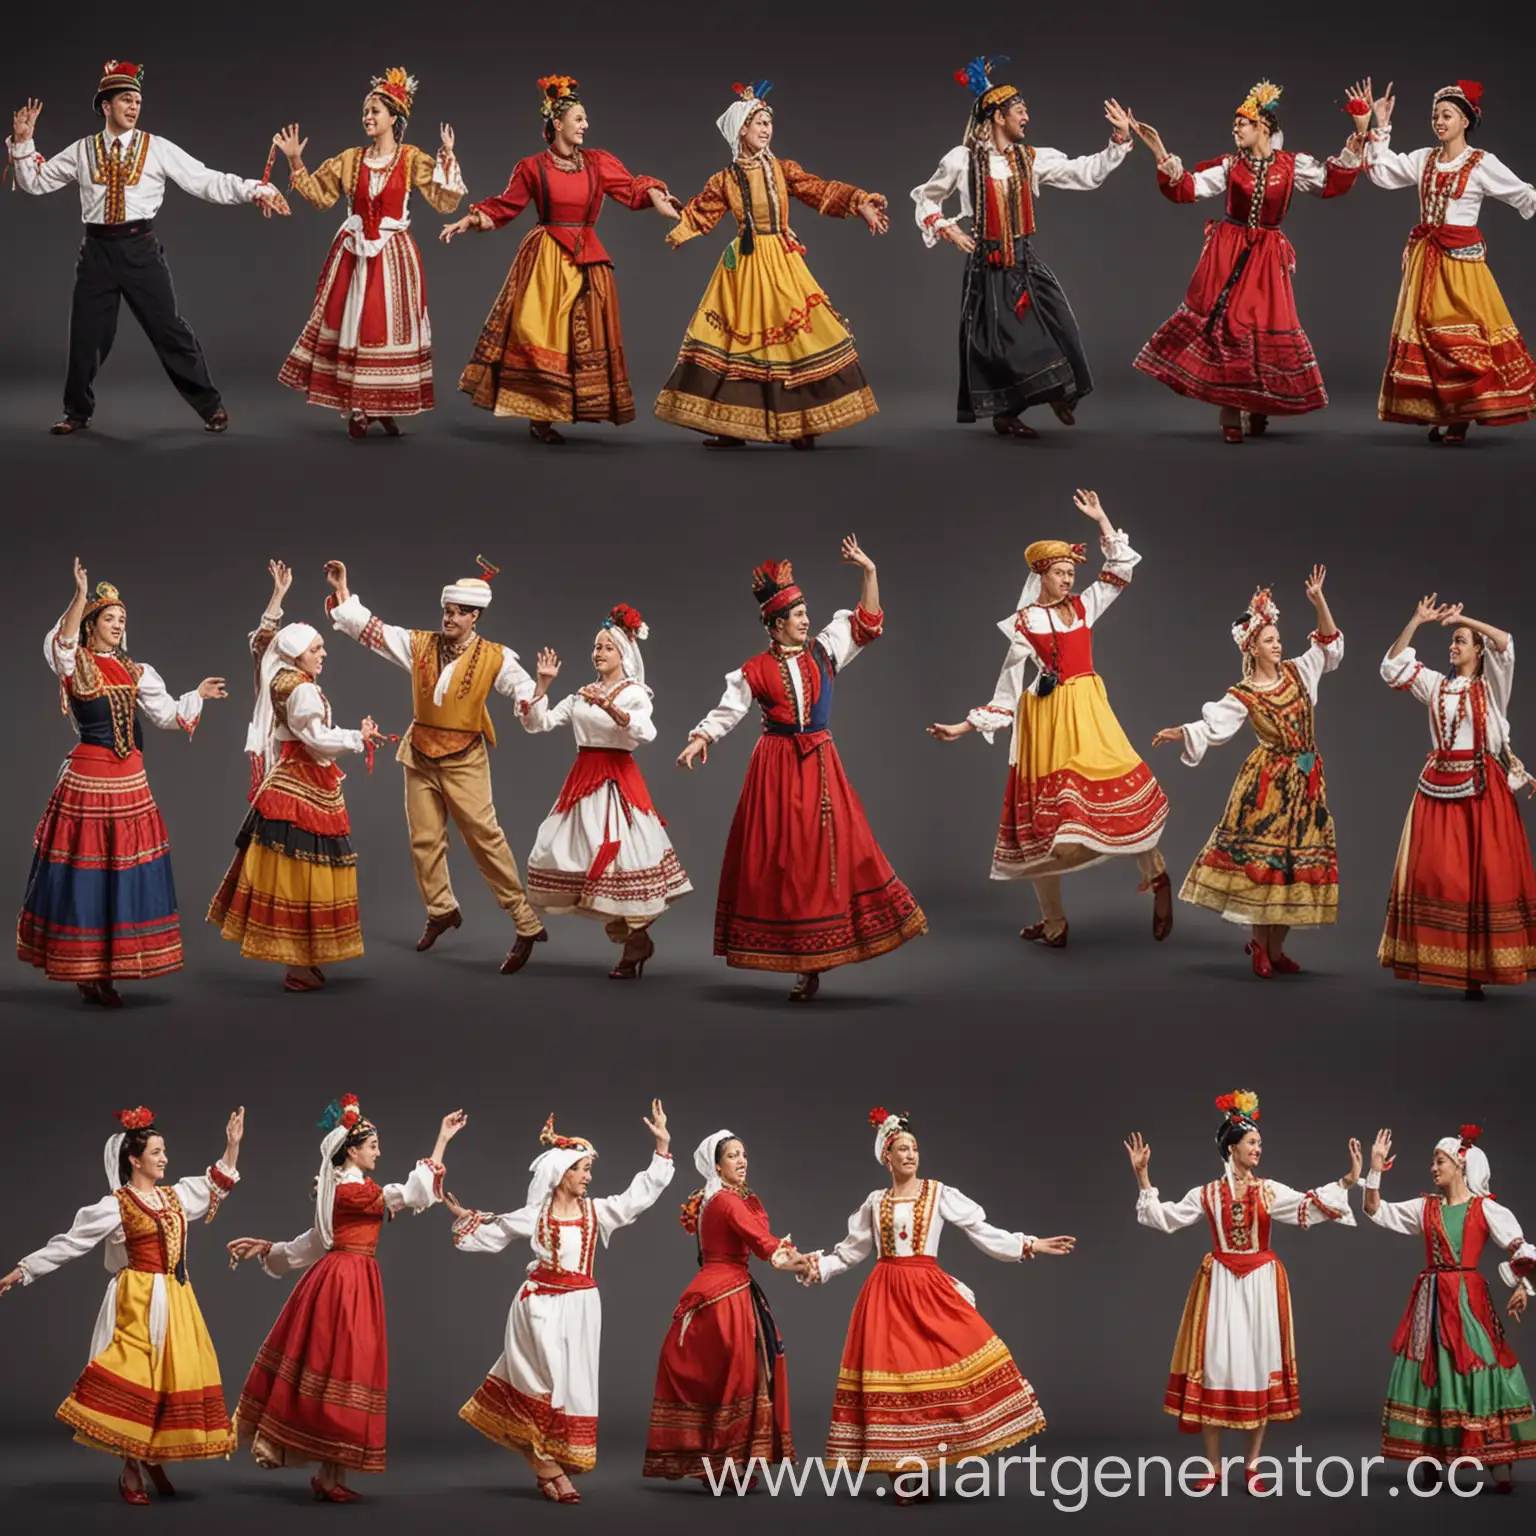 люди танцуют в разных национальных костюмах
